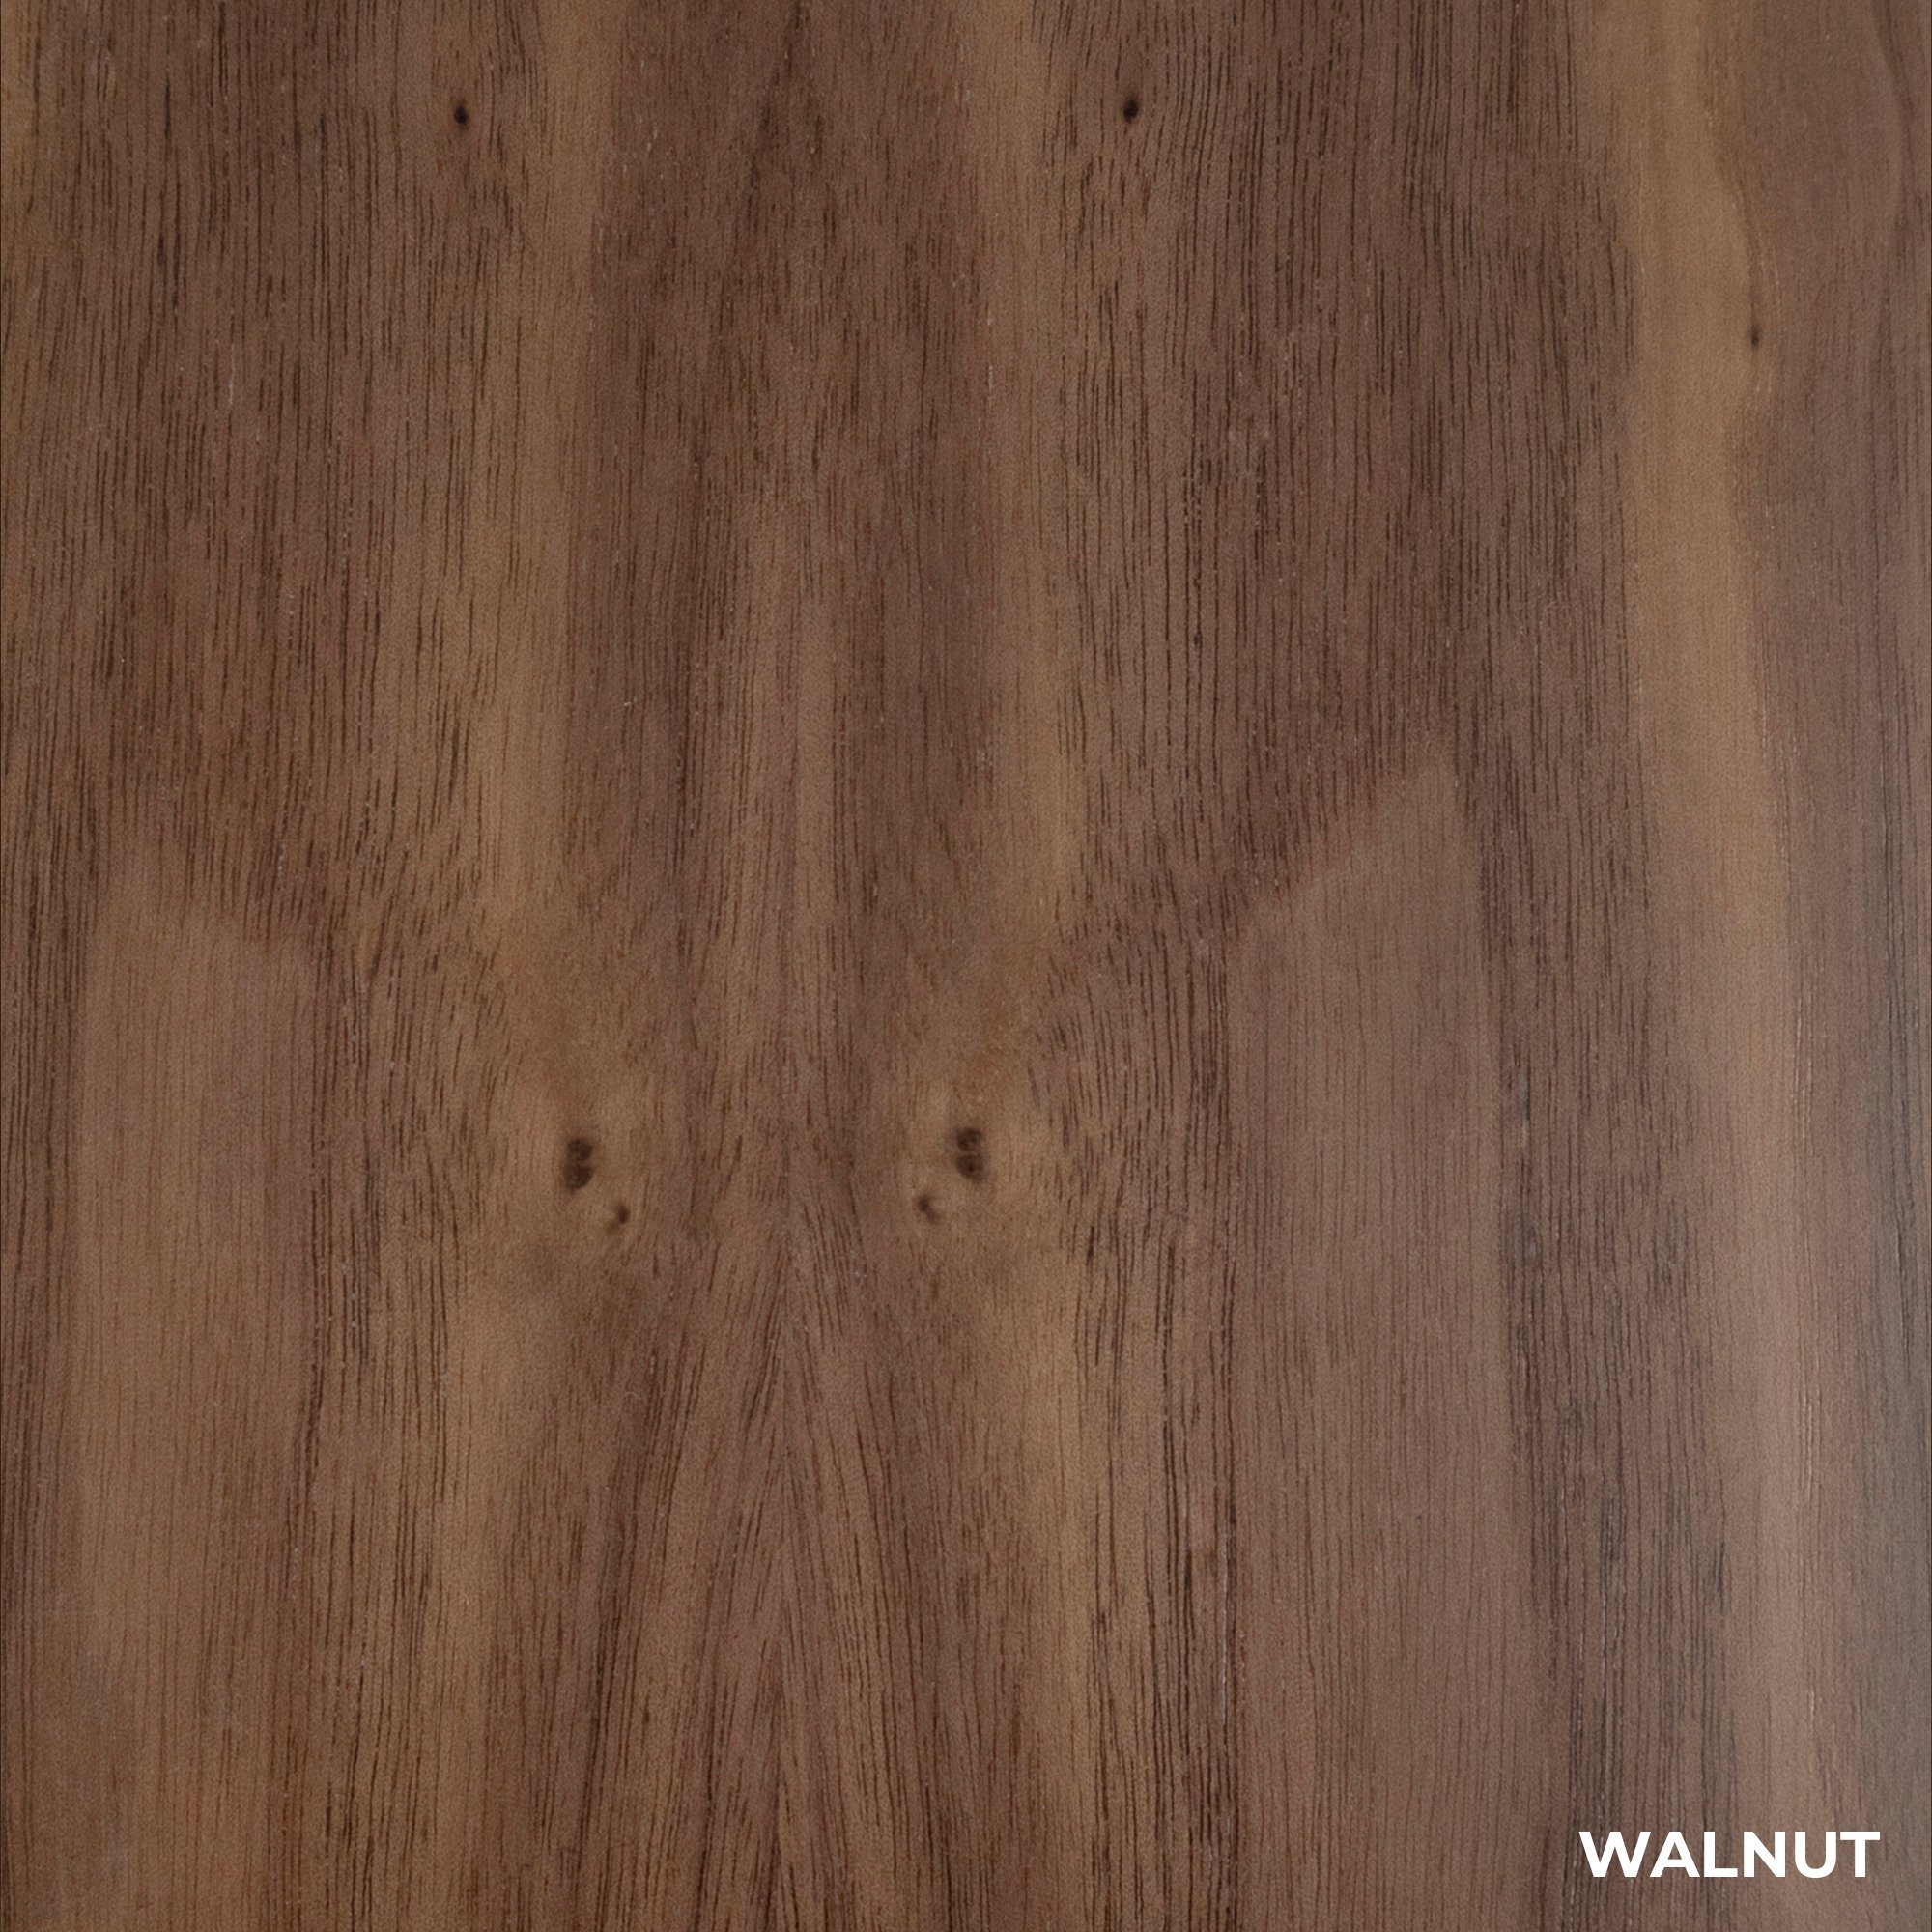 Authentic Walnut Wood Finish